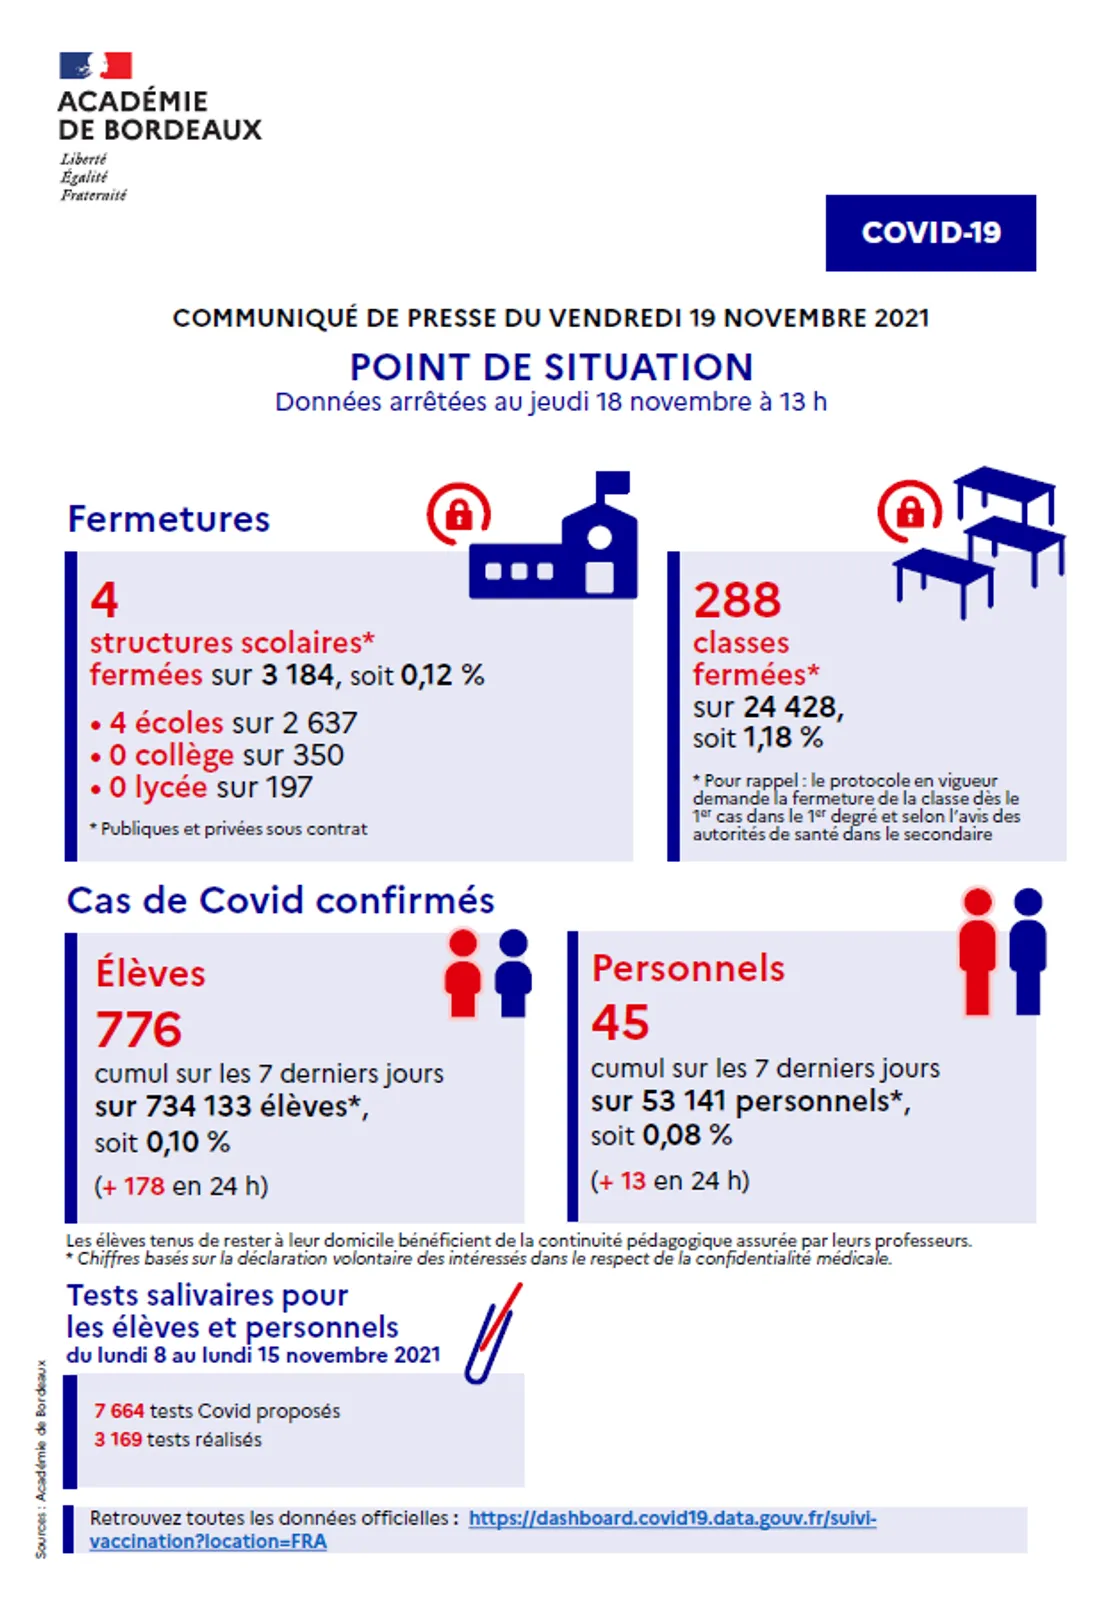 Covid-19 : Point de situation du 19/11 dans l'académie de Bordeaux